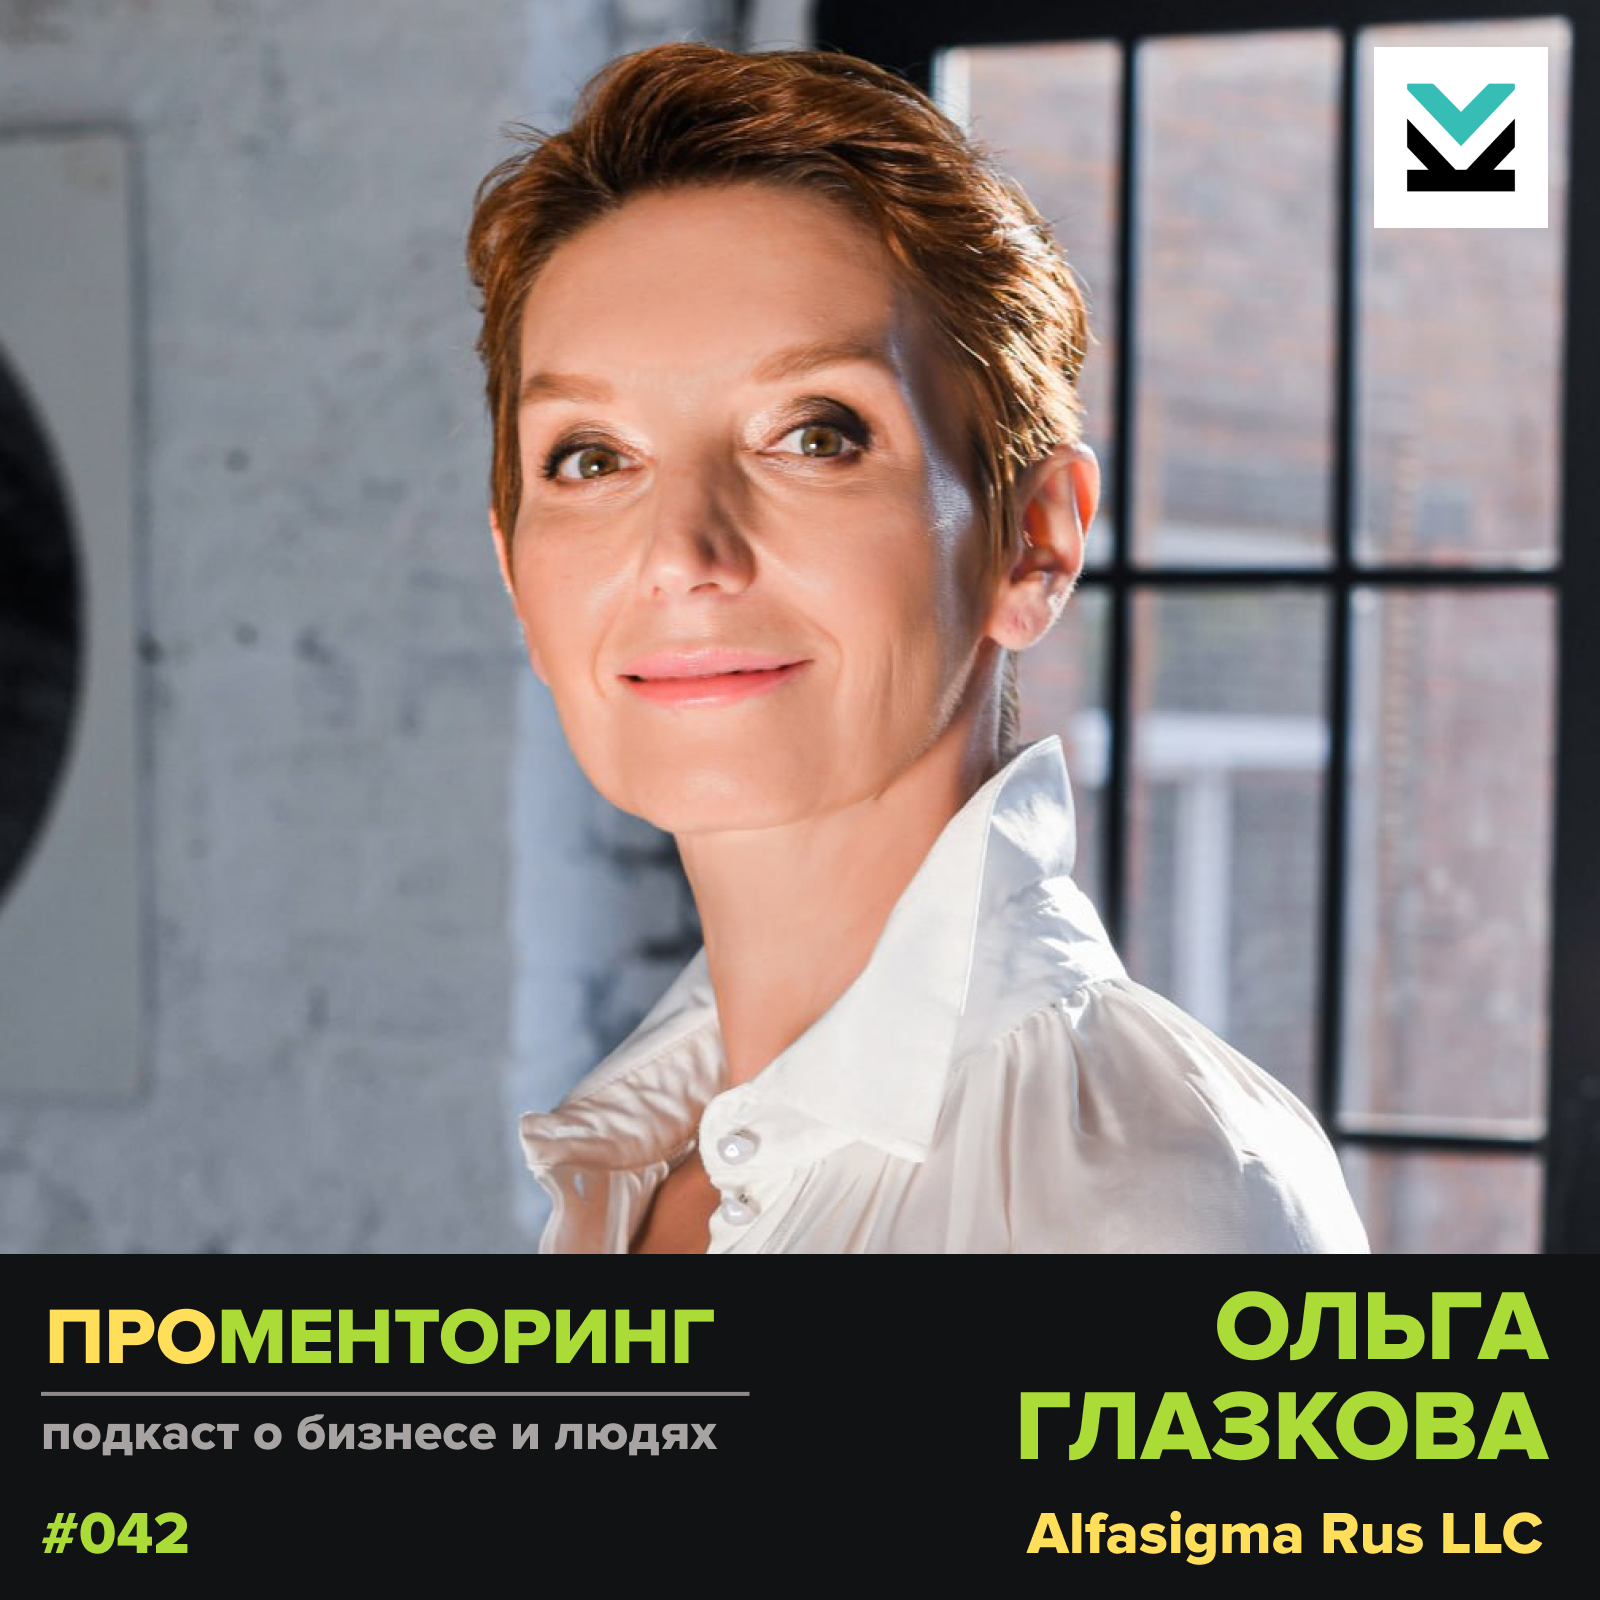 Ольга Глазкова (AlfaSigma Rus) — о менеджменте, маркетинге и стереотипах фармацевтической отрасли